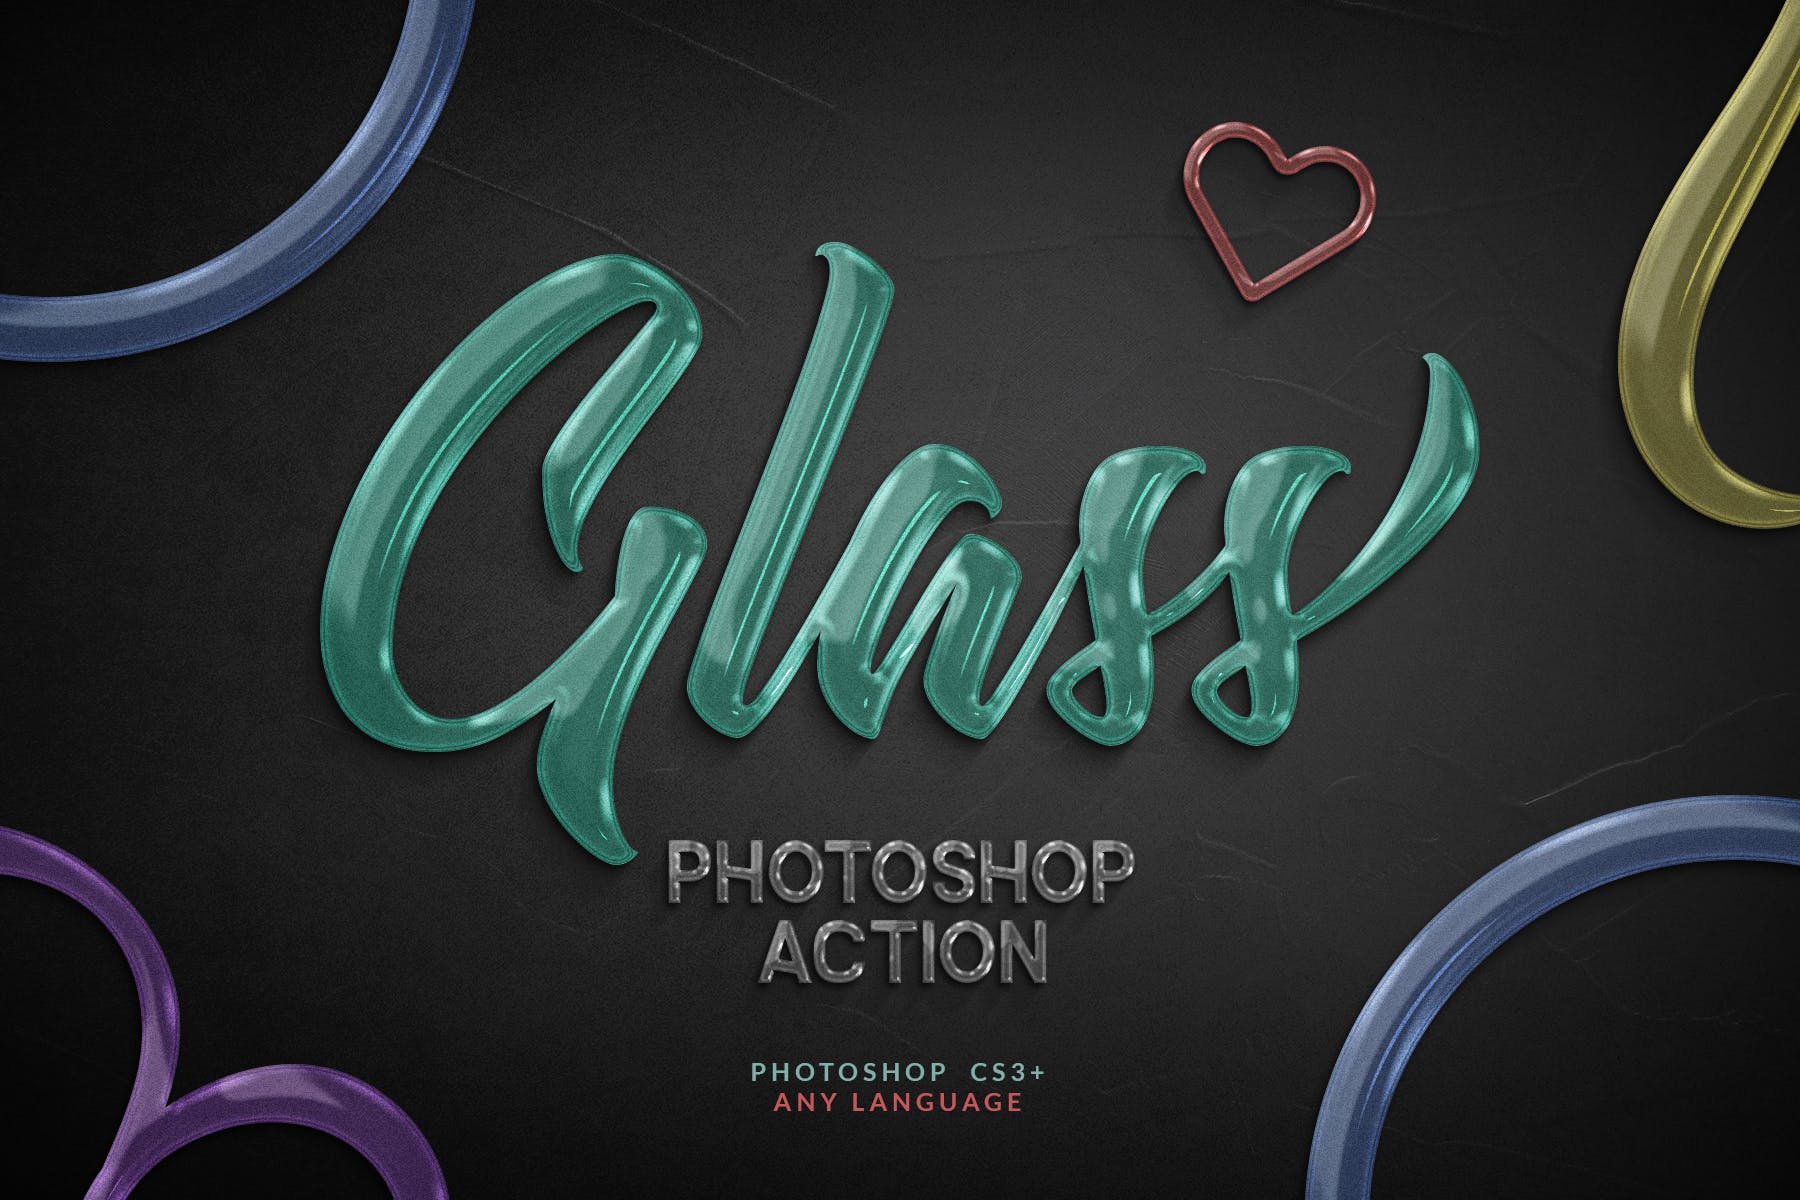 一键生成创意玻璃文字非凡图库精选PS动作 Glass Photoshop Action插图